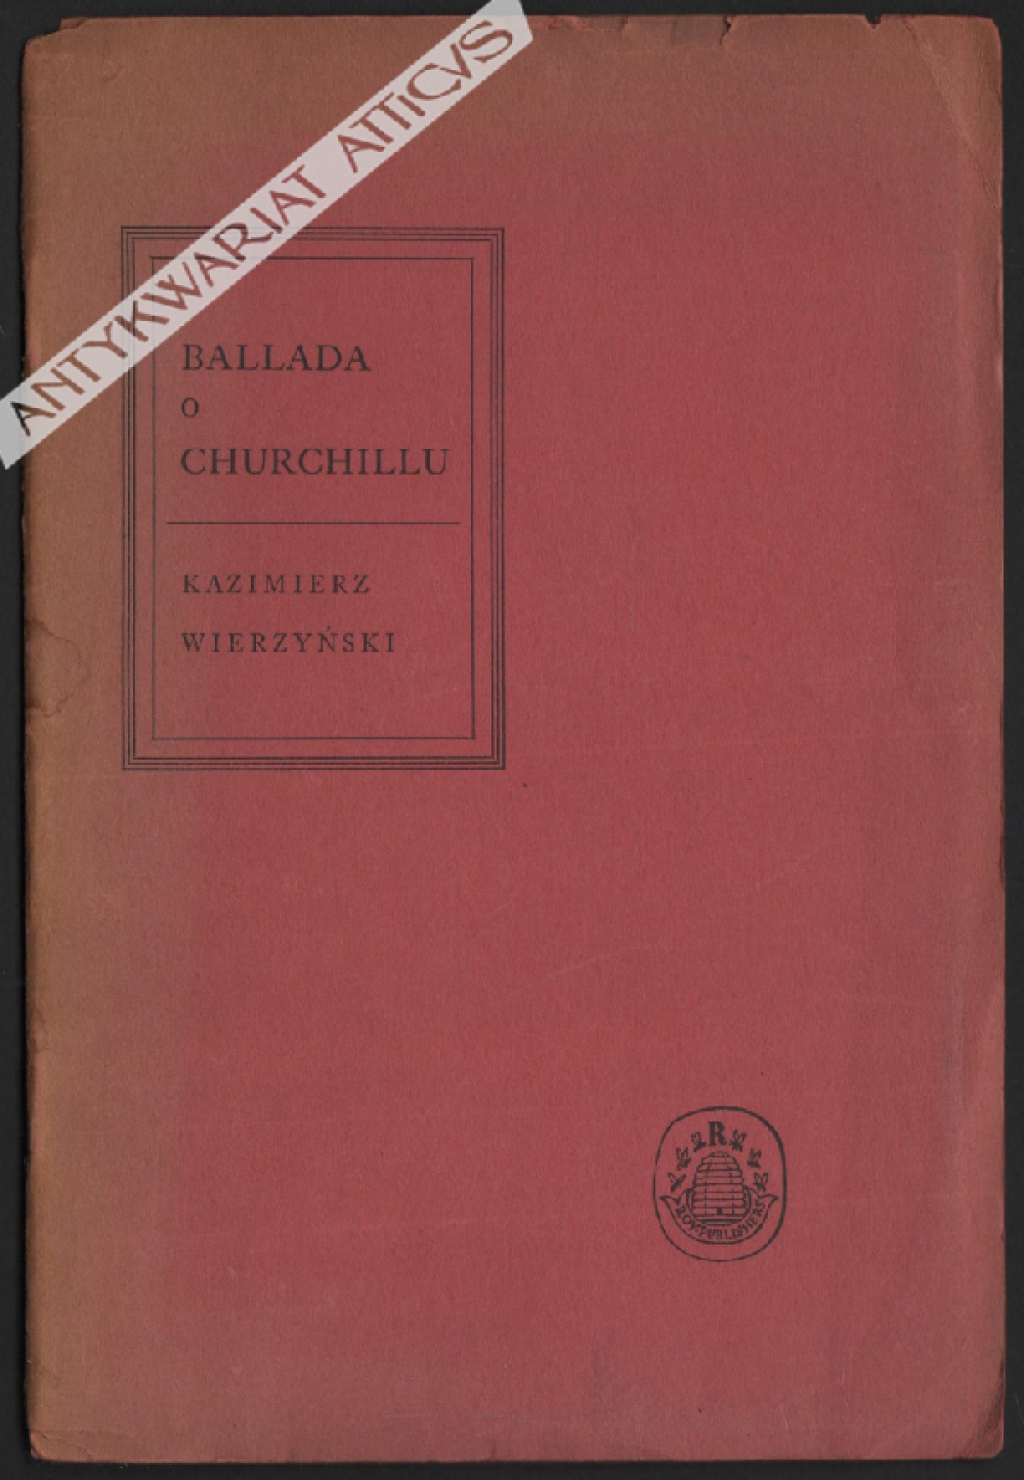 Ballada o Churchillu